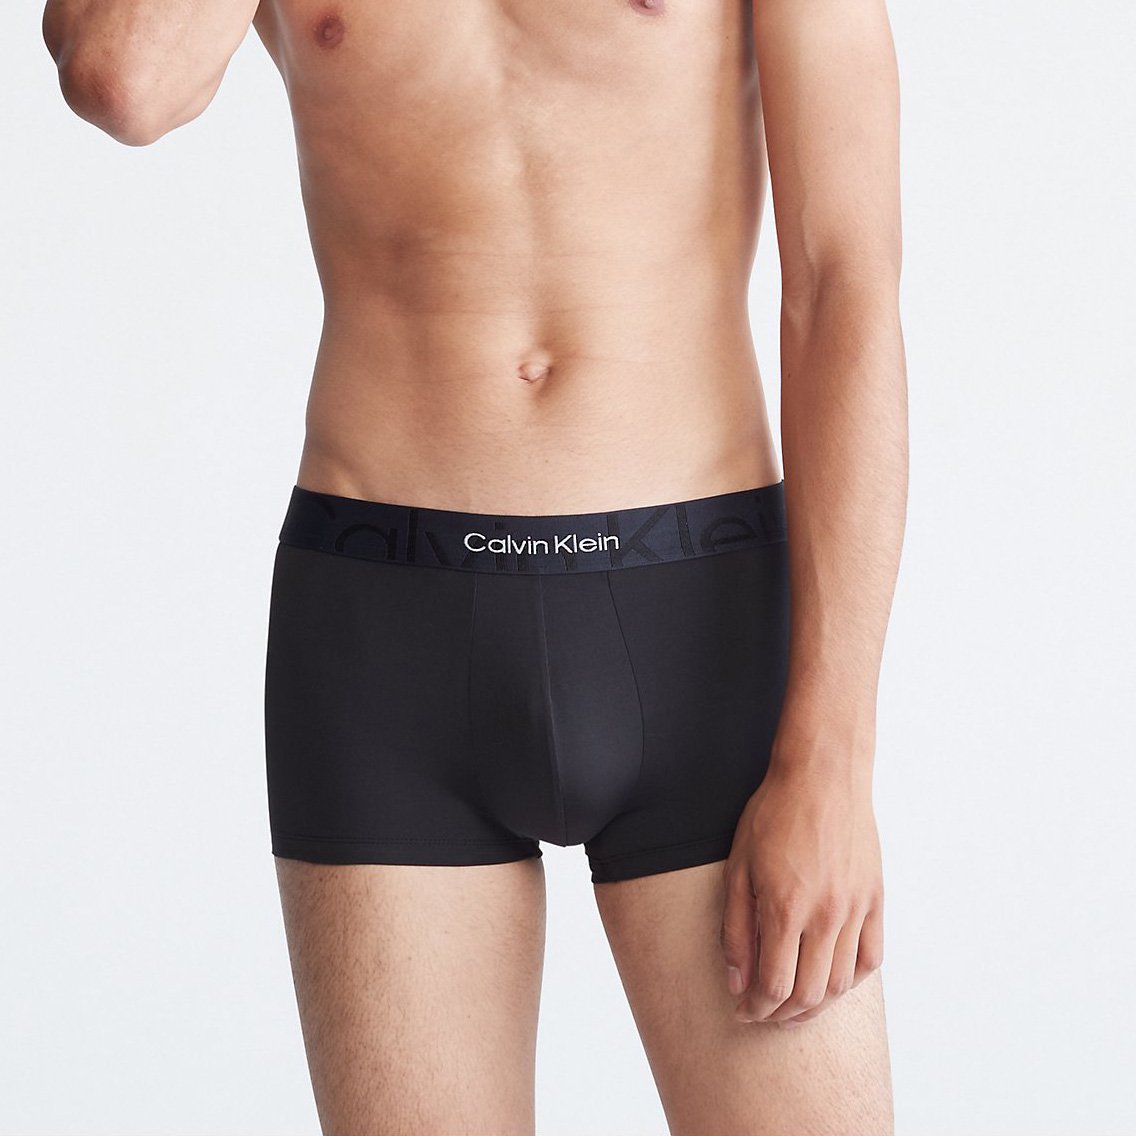 Calvin Klein(カルバンクライン)[NB3312-001]:ボクサーパンツ,男性下着,インナーの通販